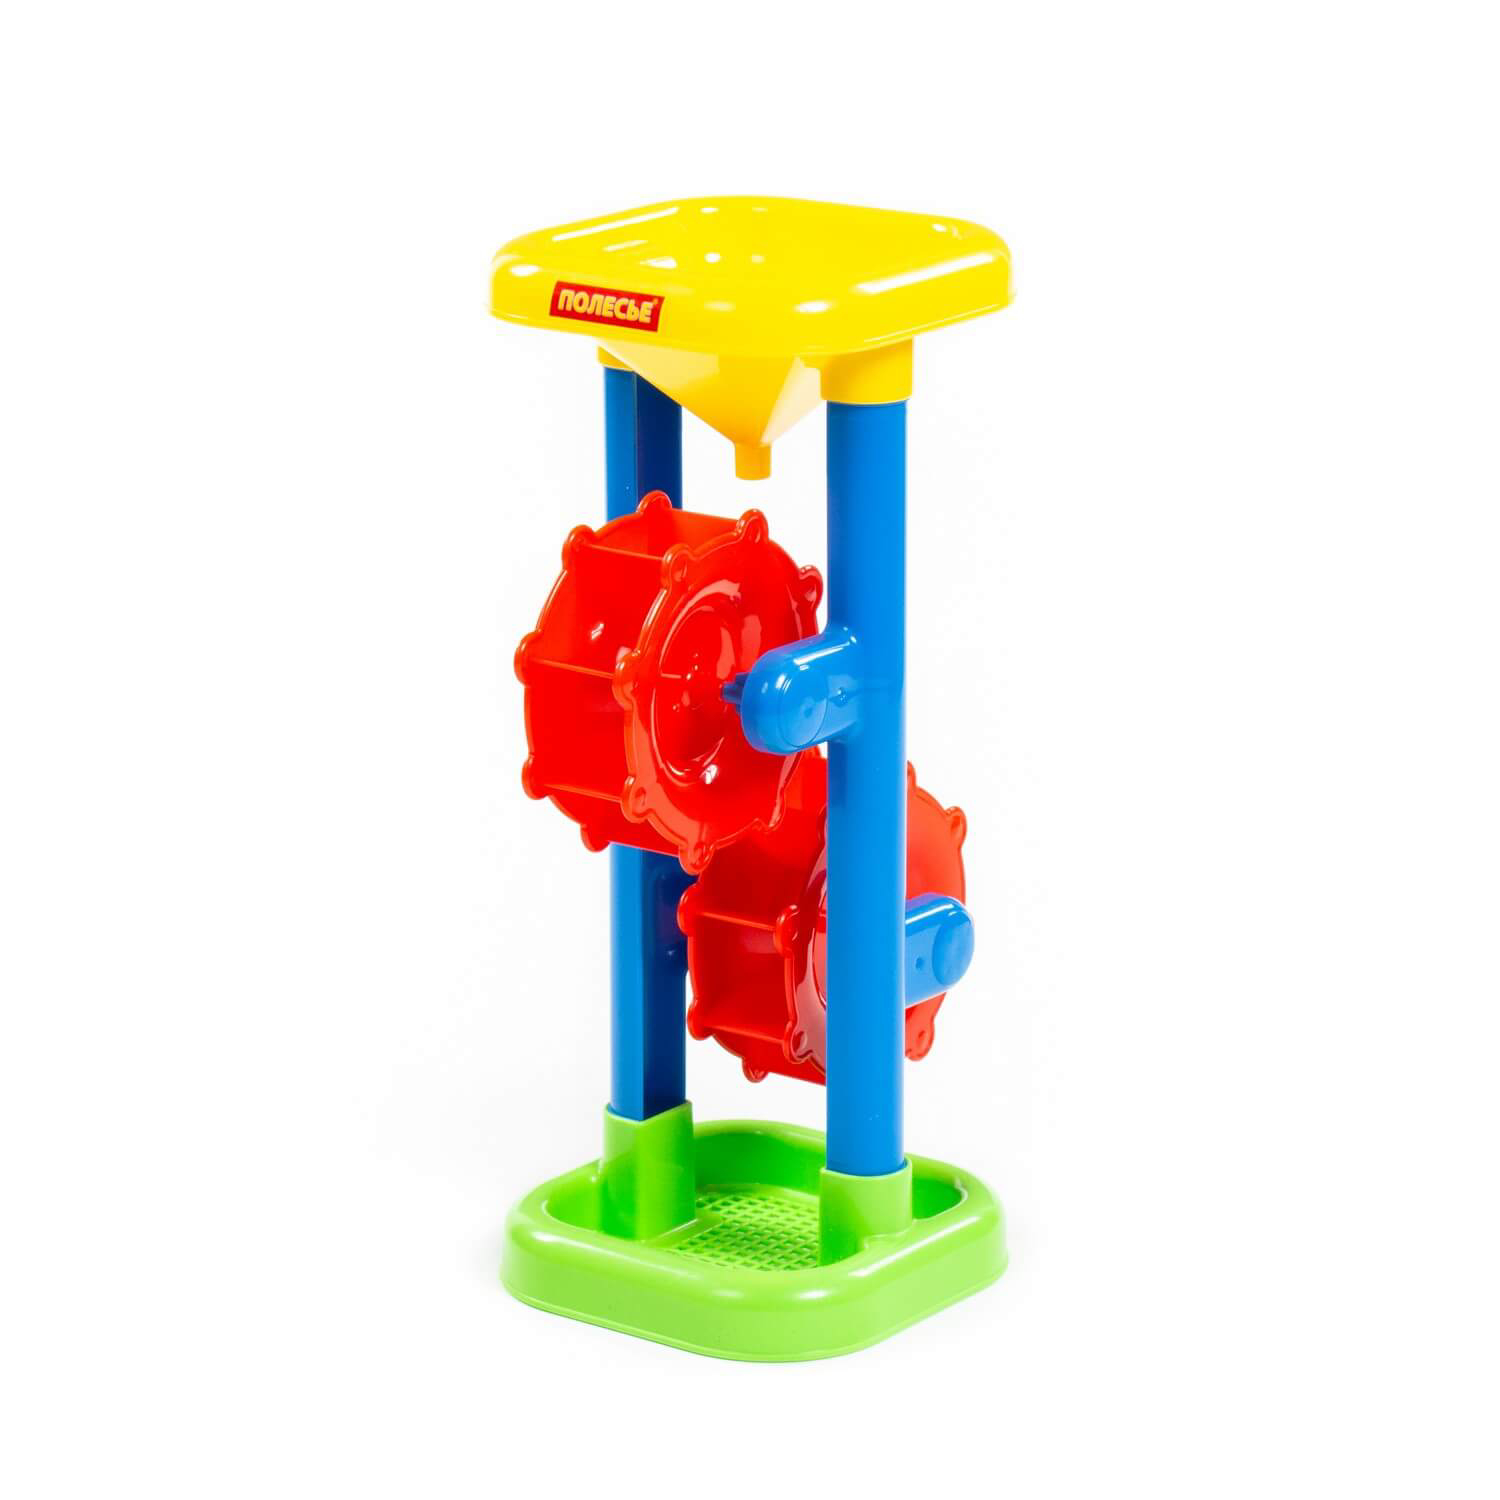 Игрушка для песочницы Полесье Песочная мельница в ассортименте игрушка елочная kurt s adler подвеска 20 см в ассортименте